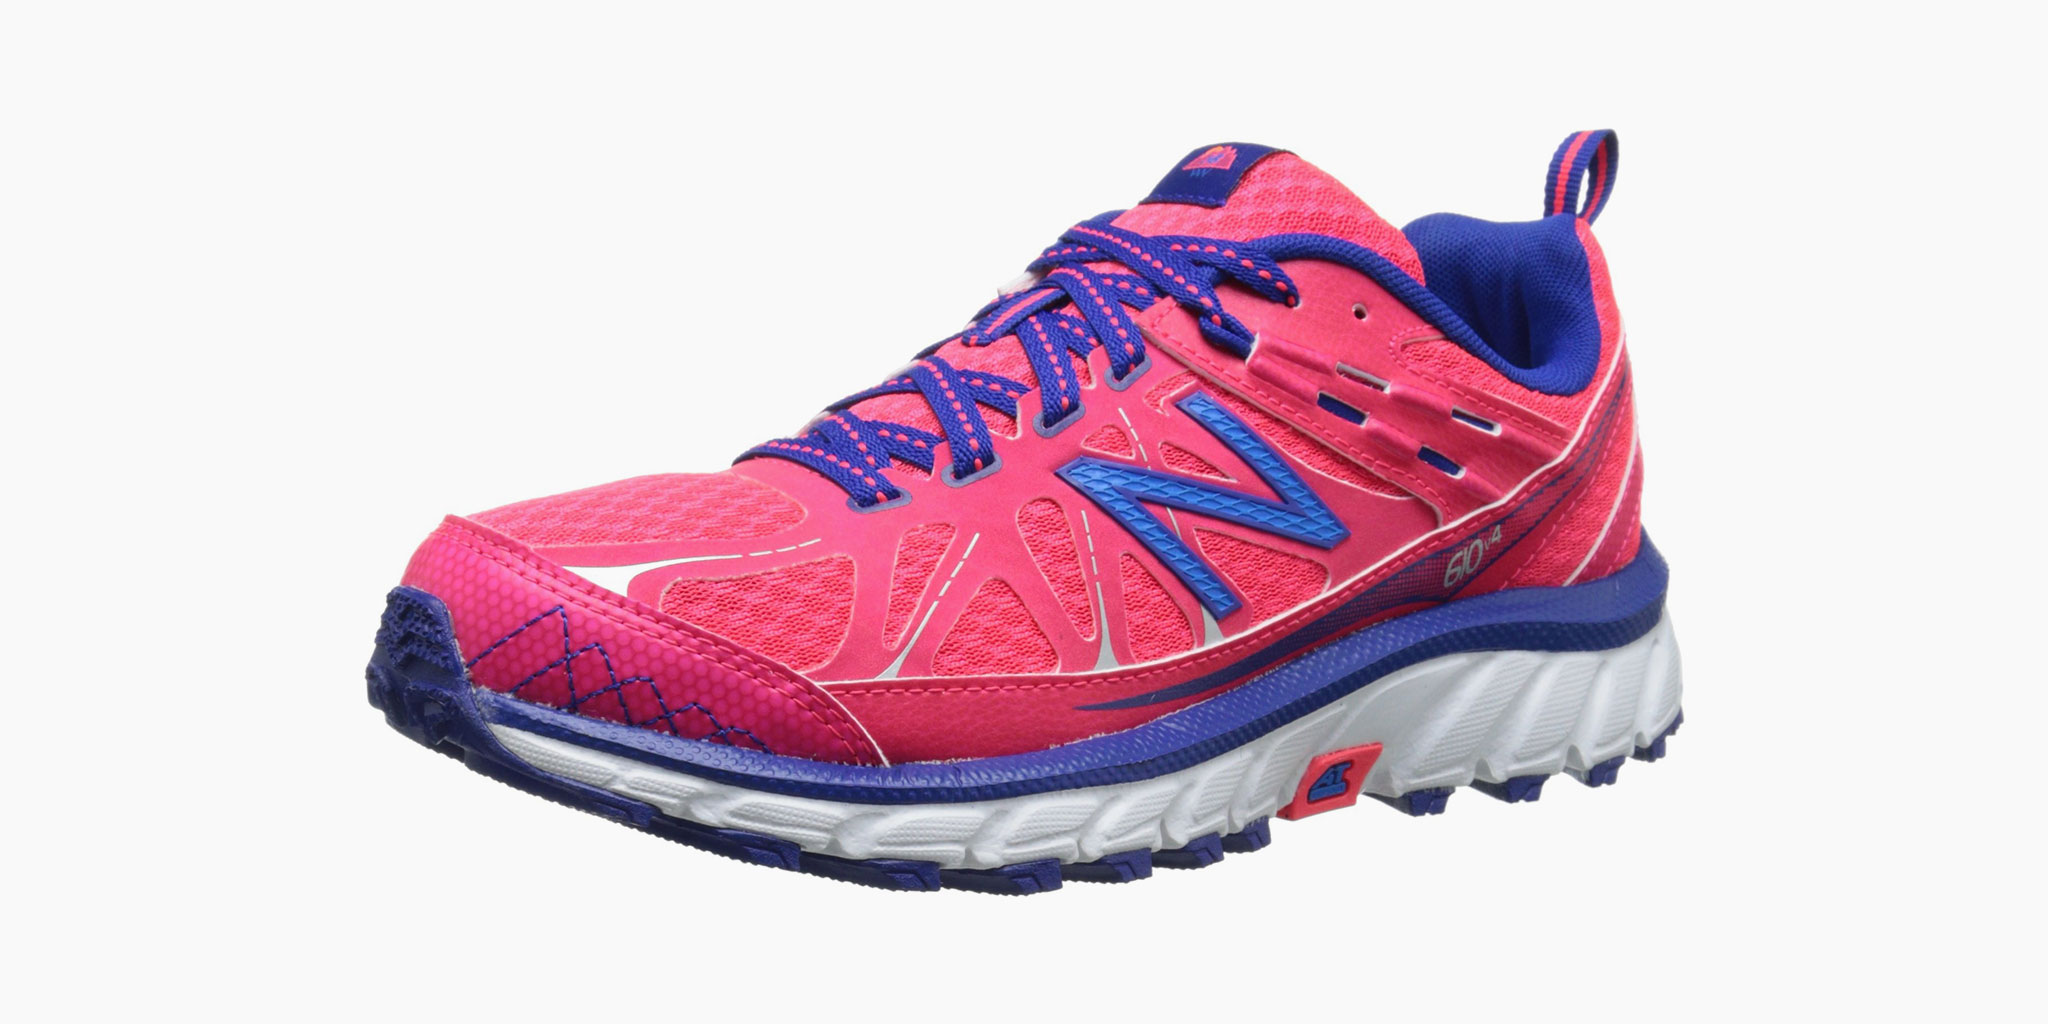 new balance women's running shoes for flat feet